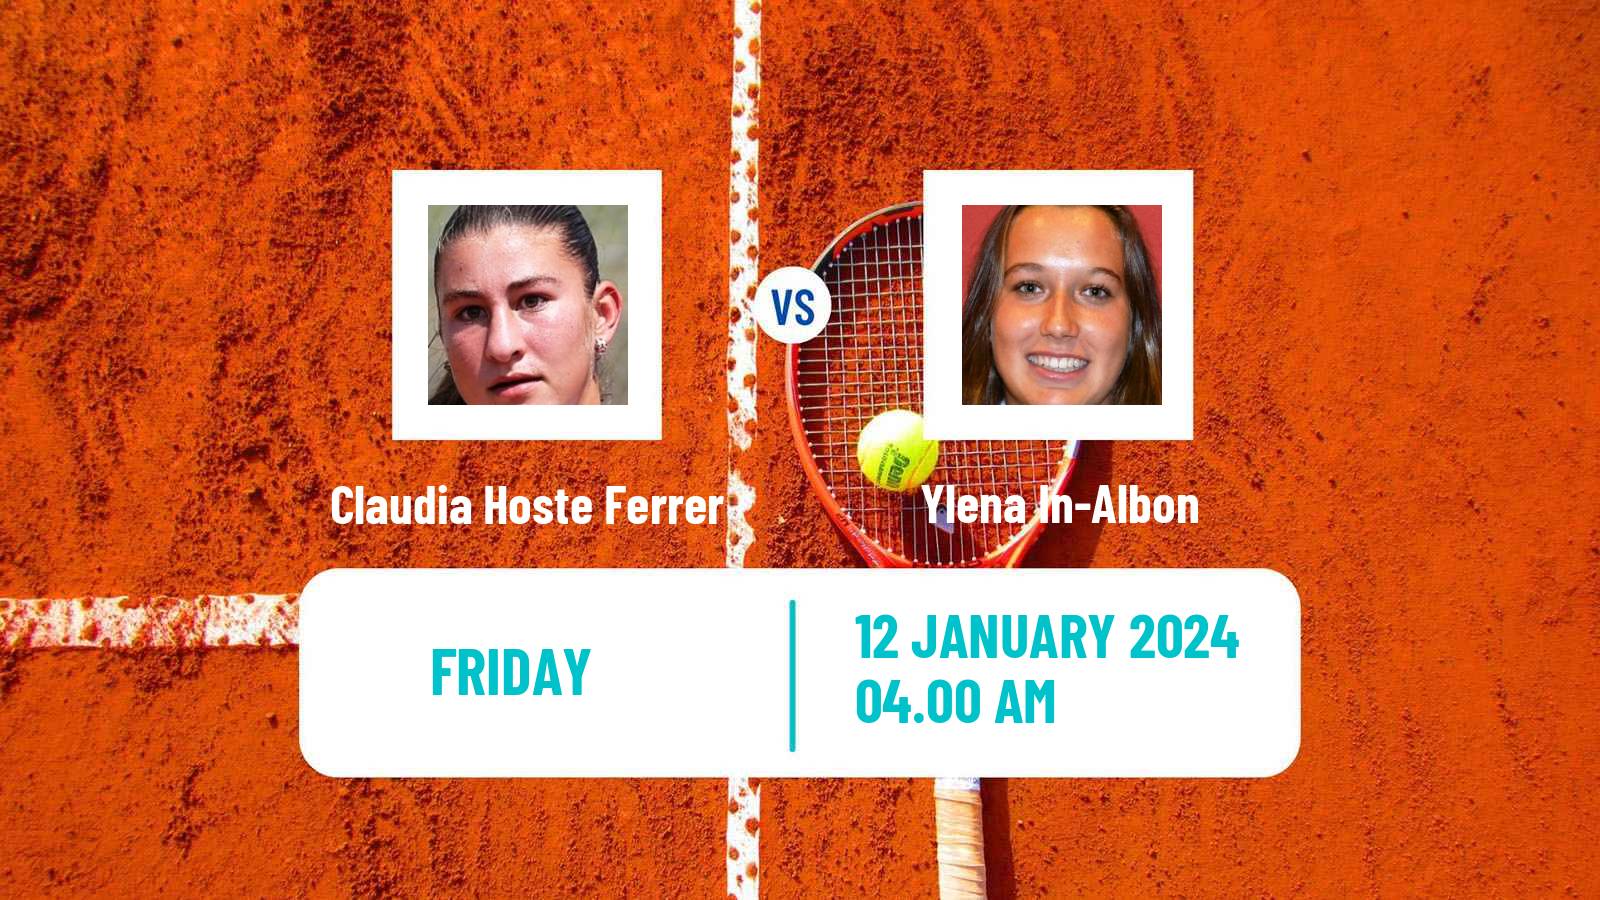 Tennis ITF W35 Antalya Women Claudia Hoste Ferrer - Ylena In-Albon